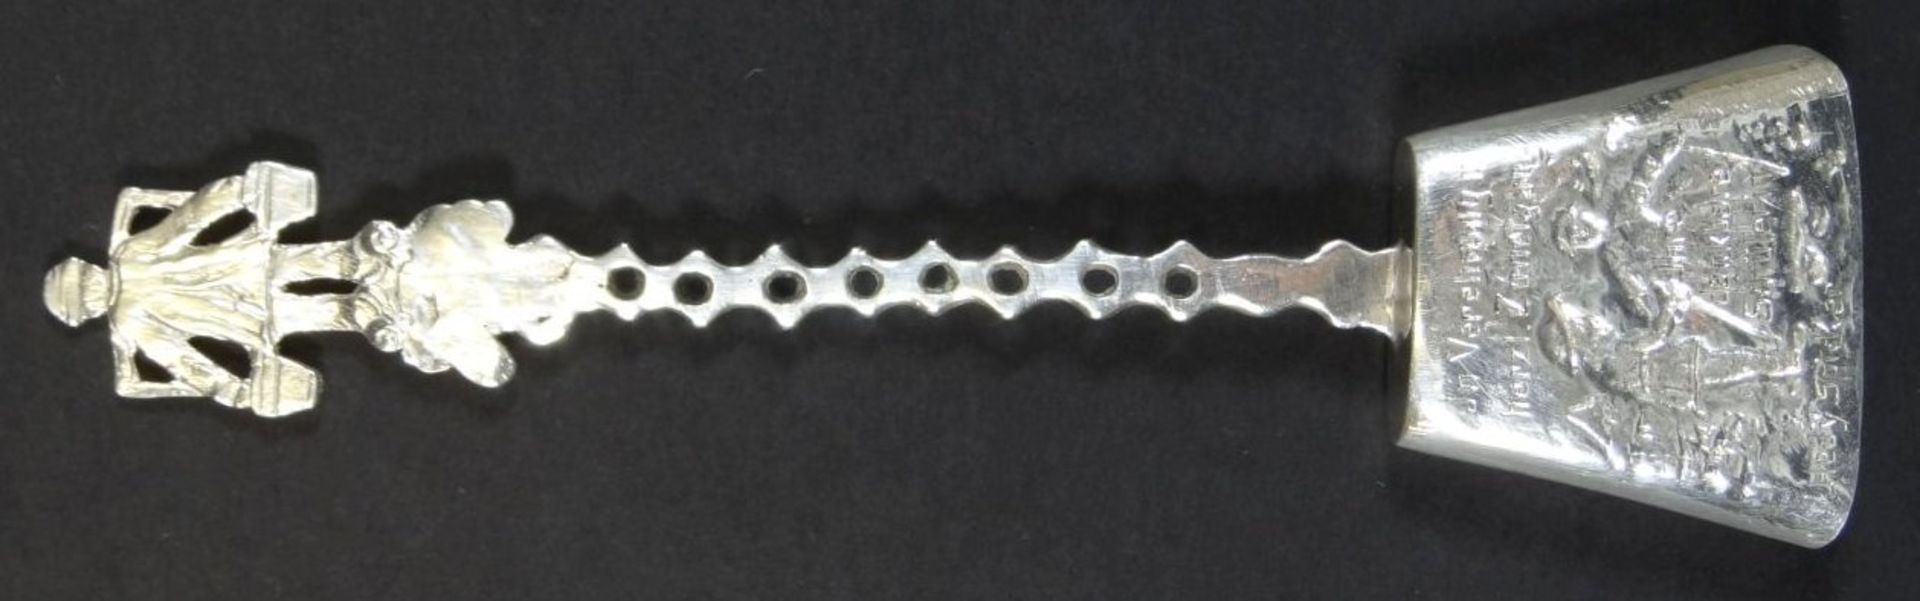 Silber-Zuckerschaufel mit Widmung, L-14 cm, 20 gr.- - -22.61 % buyer's premium on the hammer - Bild 4 aus 5